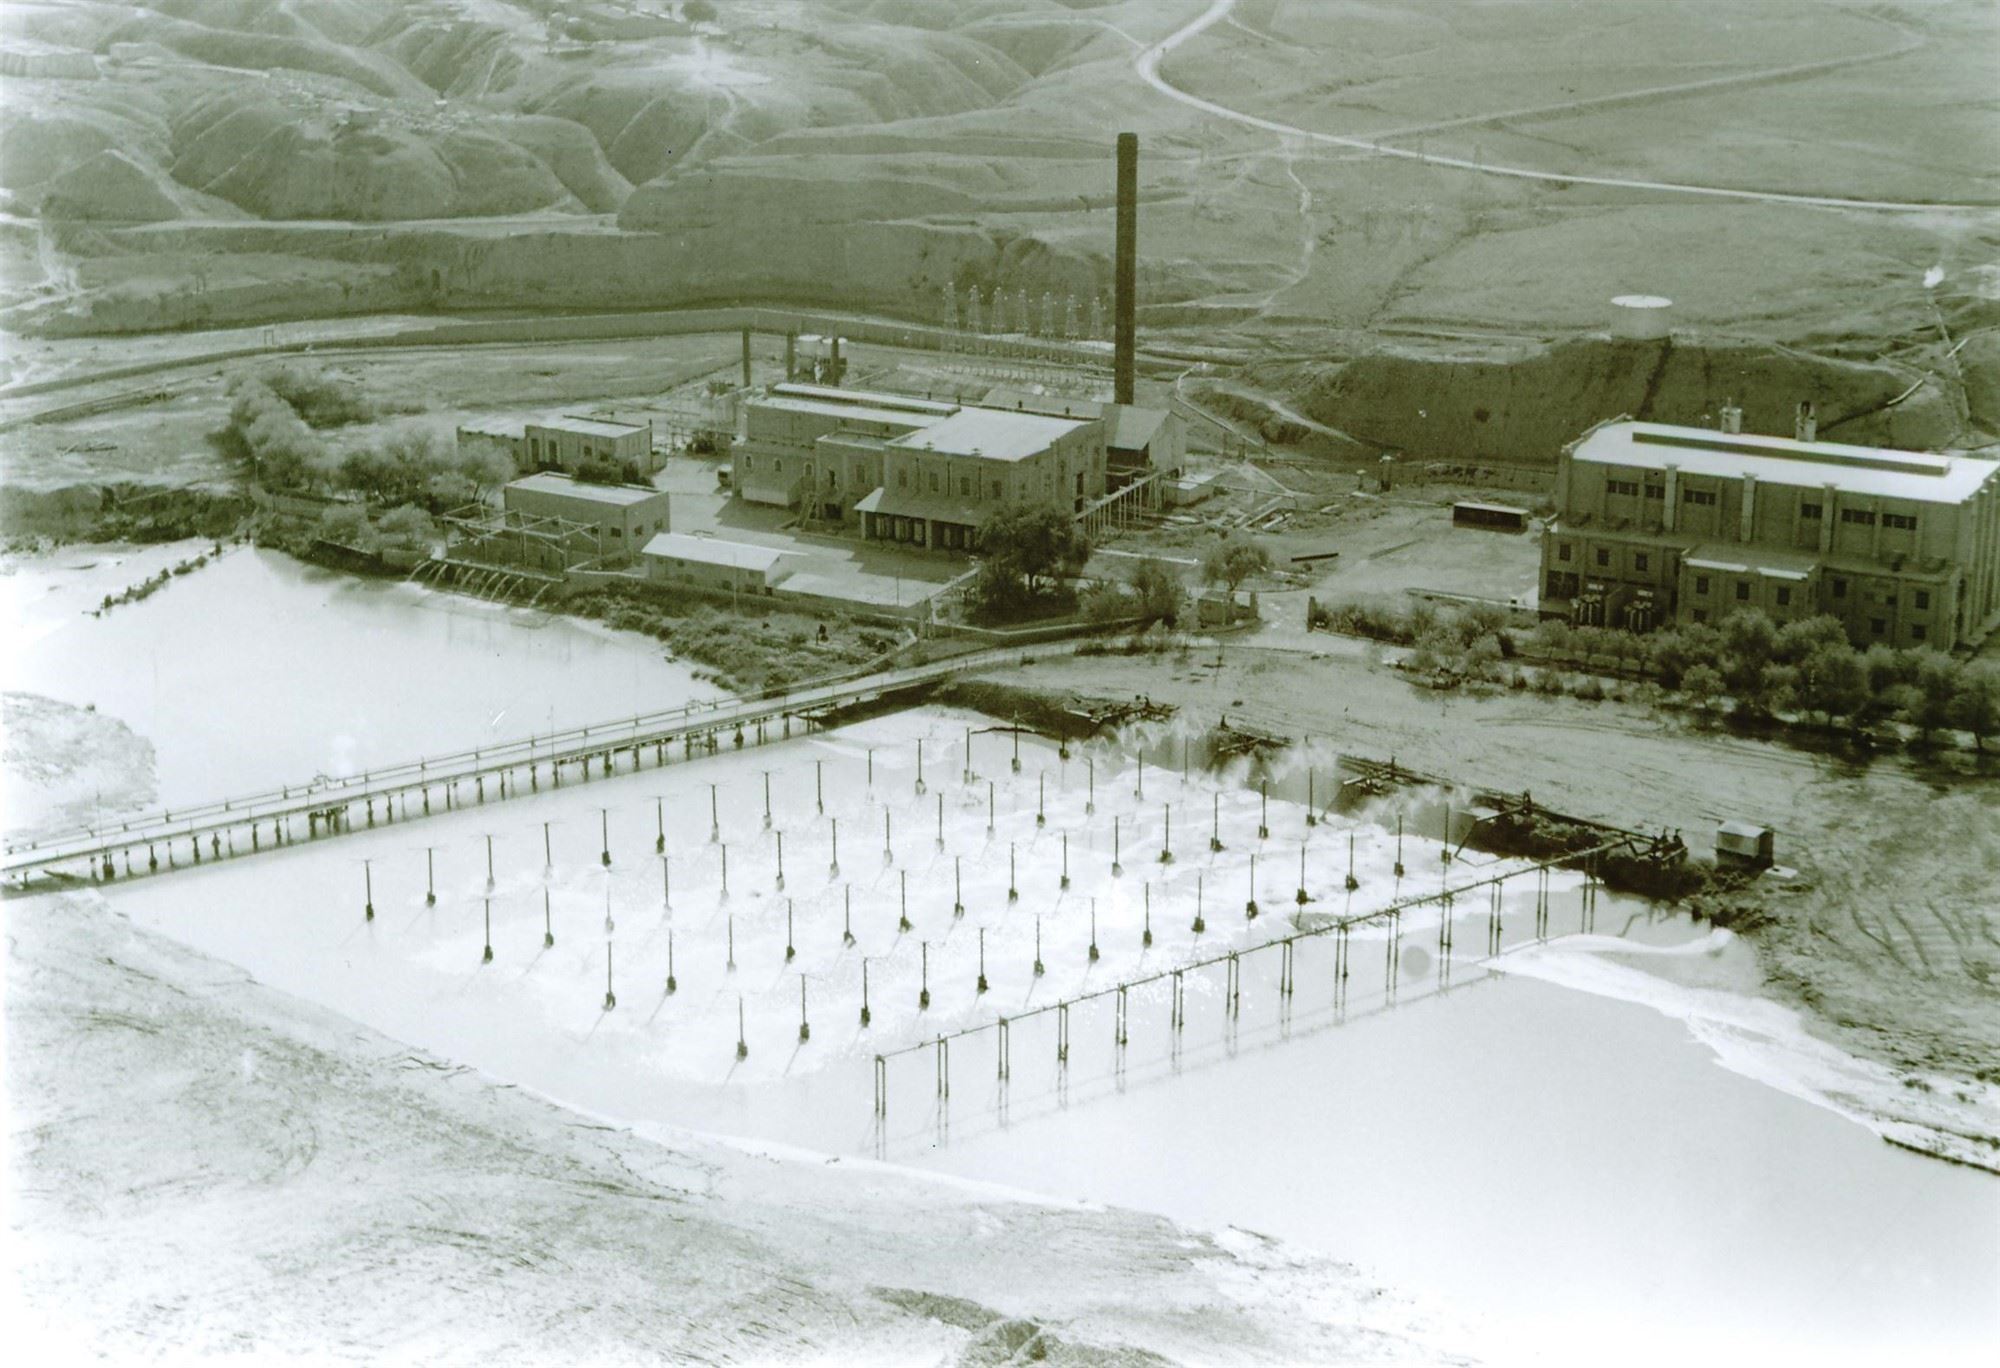 Tombi Power Plant in Masjed Soleyman in 1971